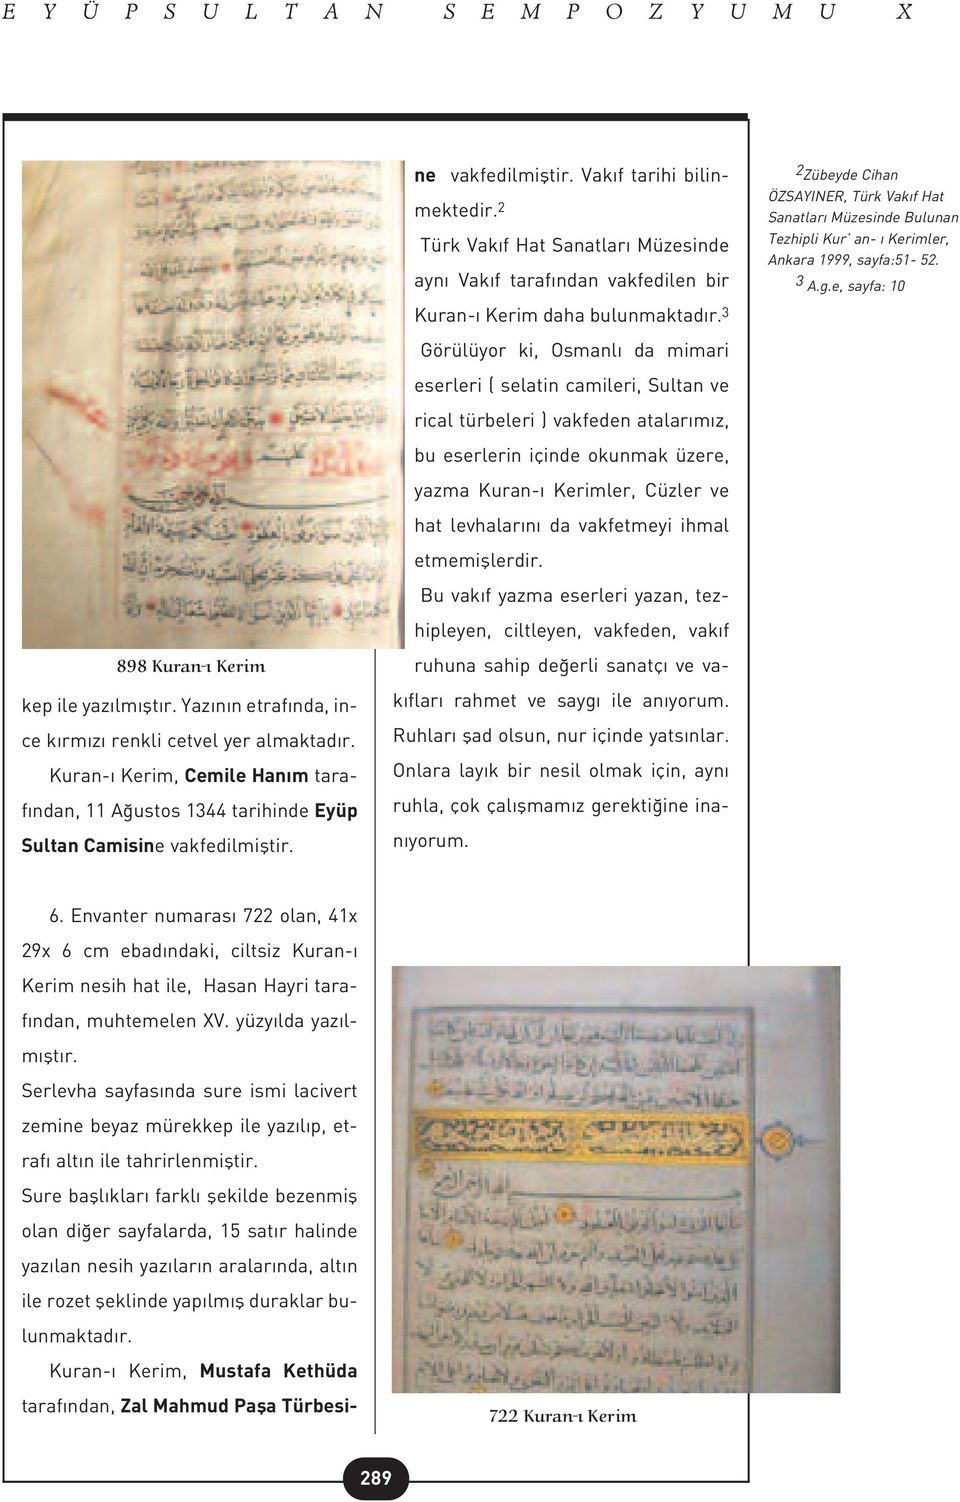 2 Türk Vak f Hat Sanatlar Müzesinde ayn Vak f taraf ndan vakfedilen bir Kuran- Kerim daha bulunmaktad r.